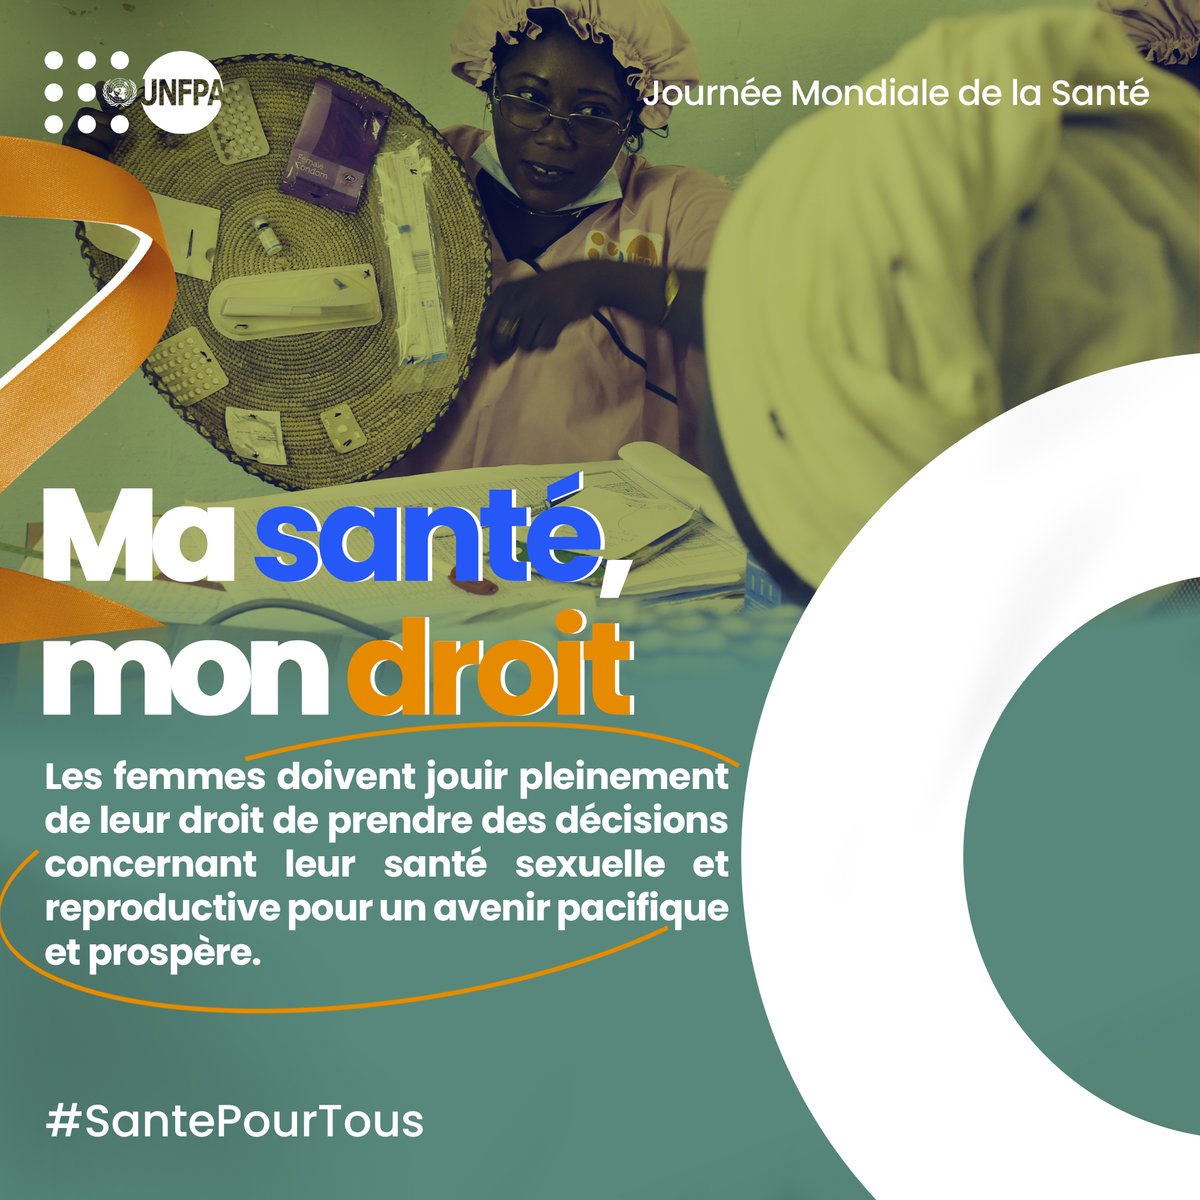 ✅ Les femmes doivent jouir pleinement de leur doit à decider de leur santé sexuelle et reproductive pour un avenir prospère. #SantePourTous